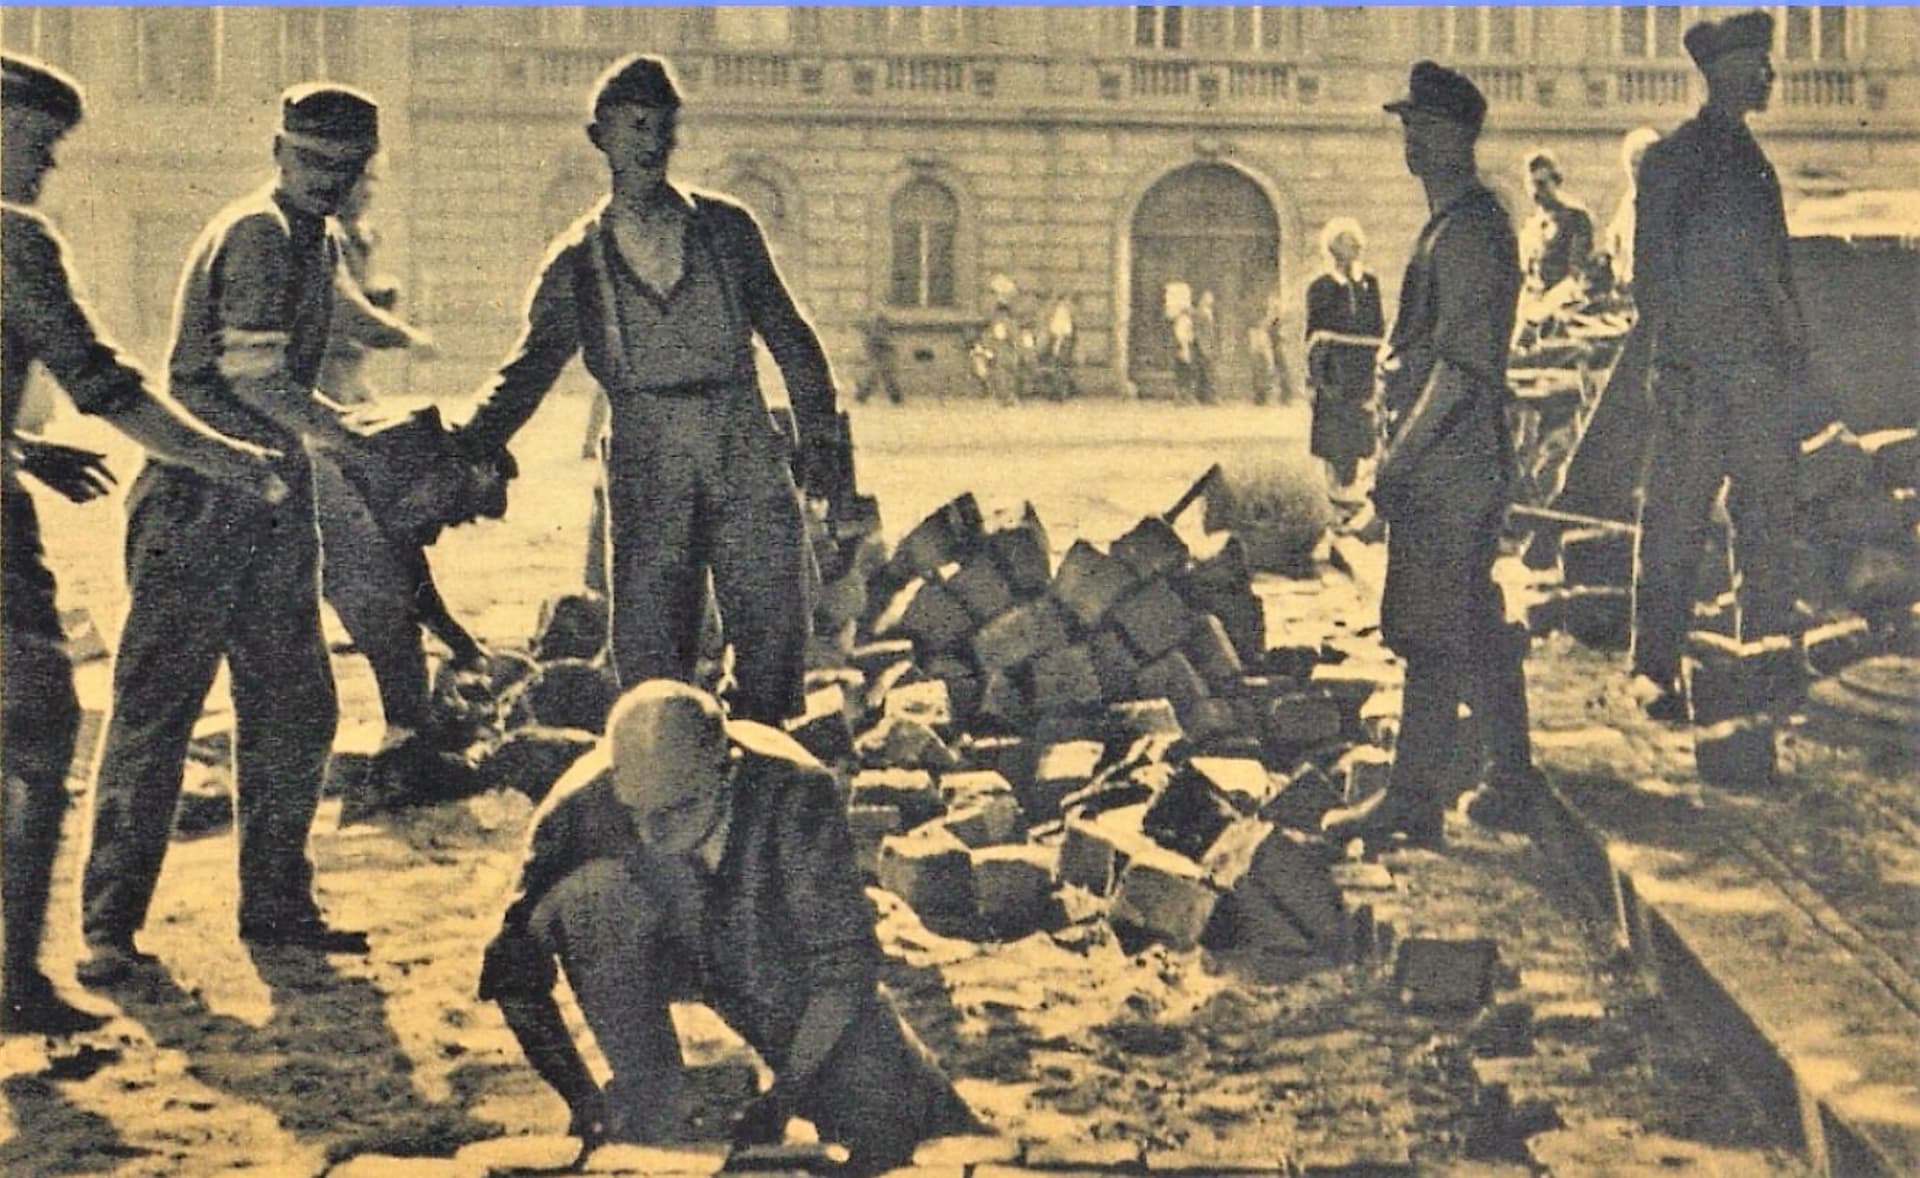 Pražští Němci společně se zajatci čistí ulice. V té době už byli internováni různě po Praze, zajatce i tisíce německých sousedů zavřeli Češi i na stadion na Strahově. Foto z publikace Květnová revoluce, 1945.